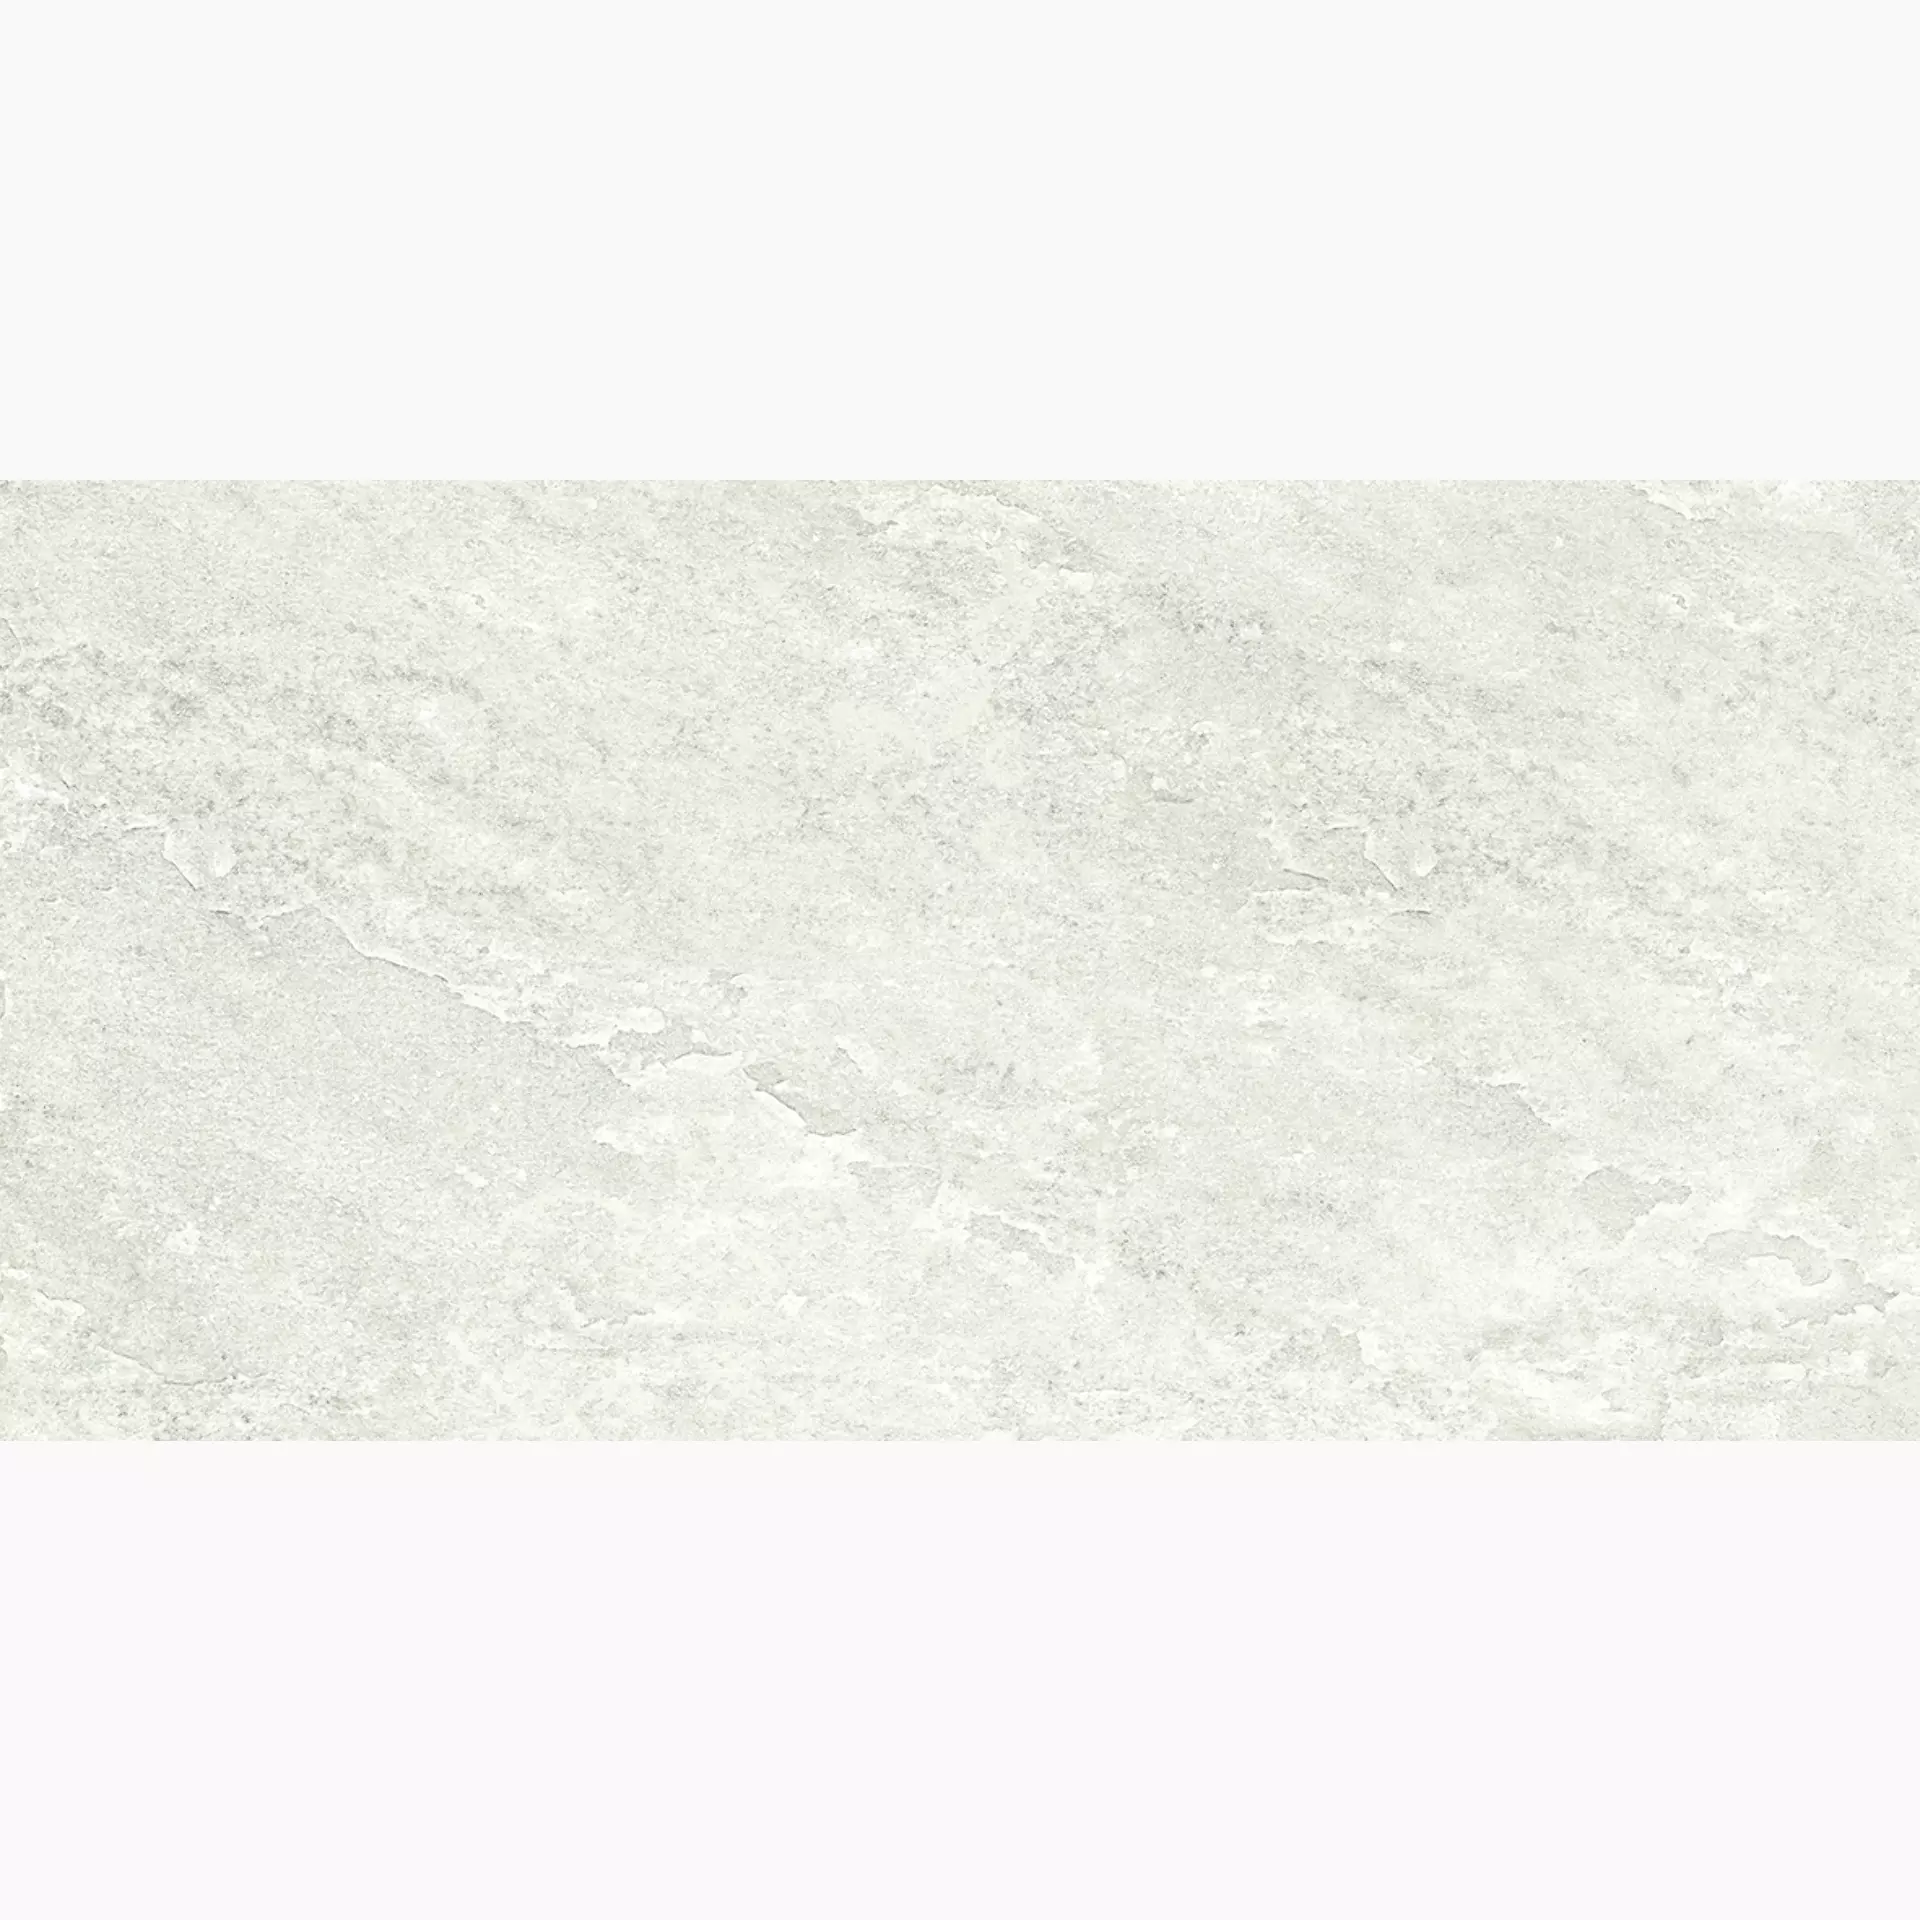 Ergon Oros Stone White Naturale EKLC 30x60cm rectified 9,5mm